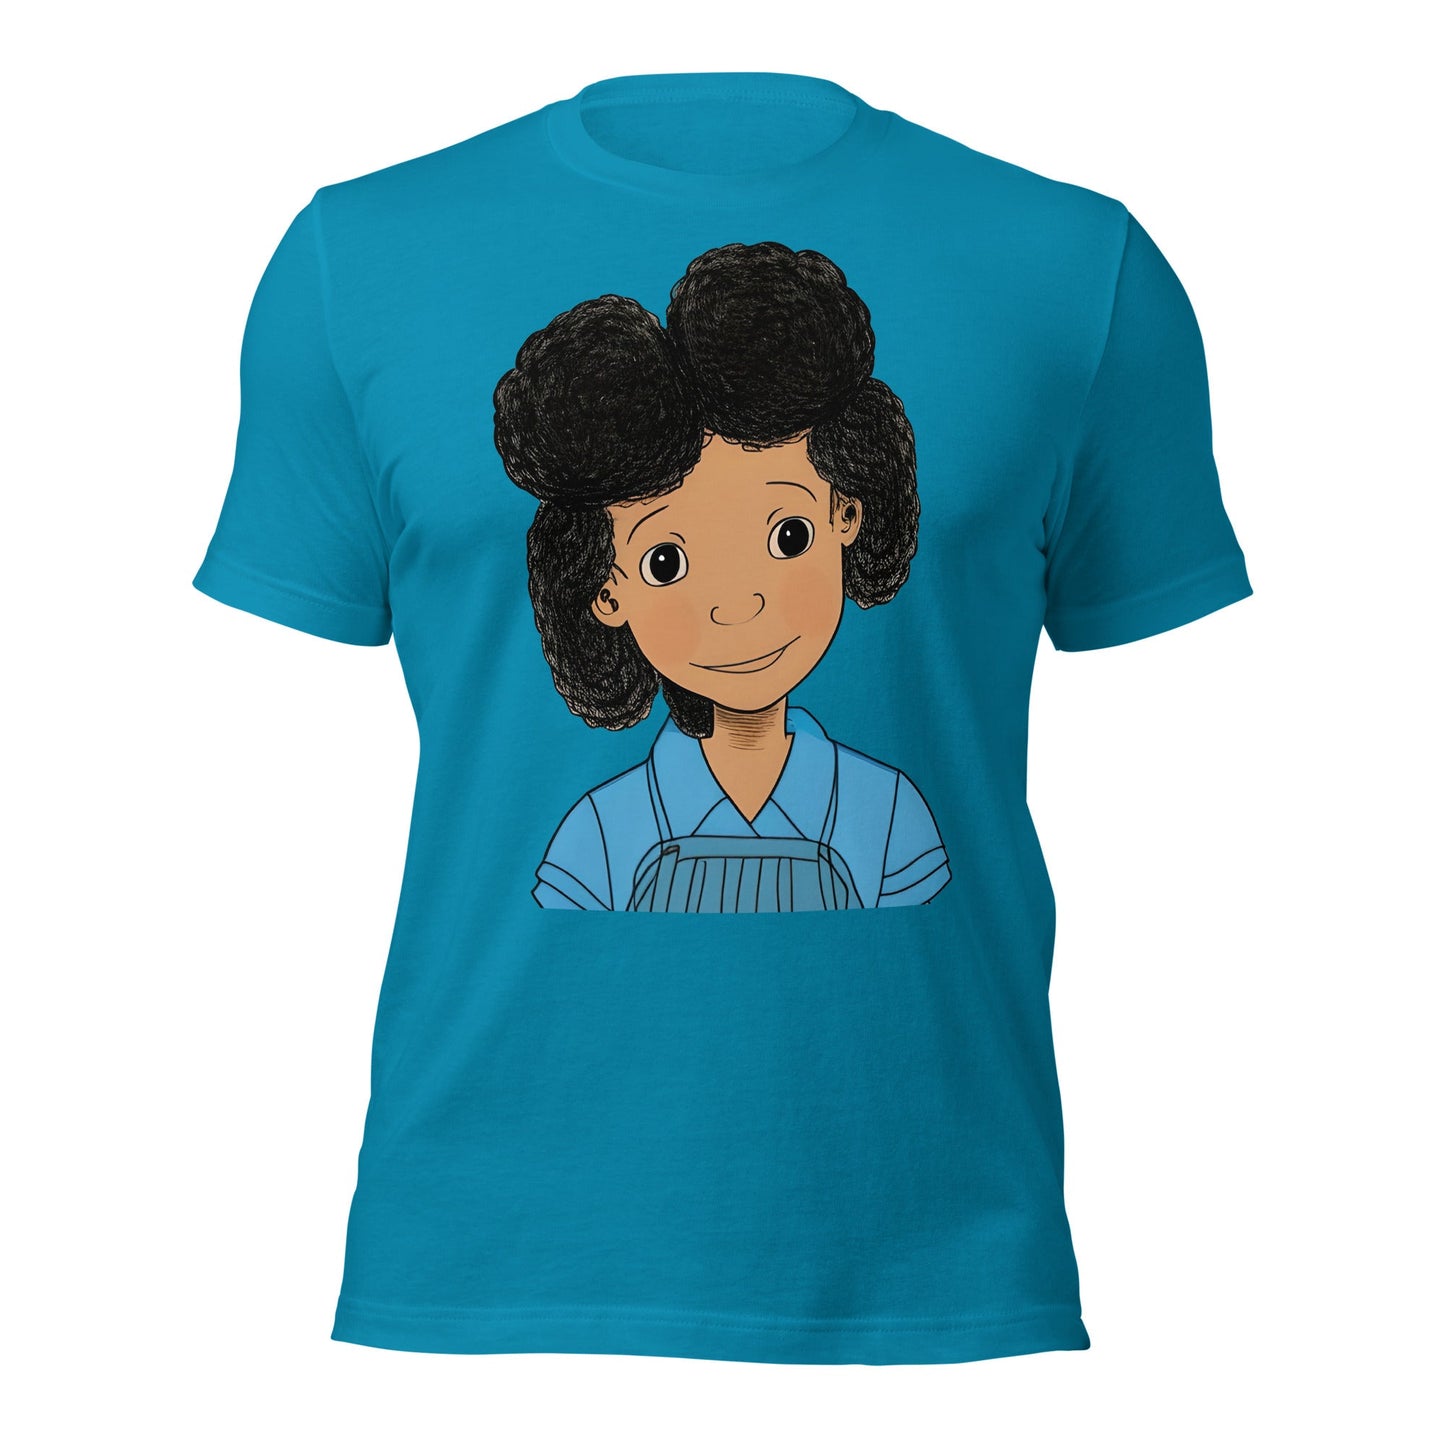 My Blue Girl Art T-shirt-Wearable art t-shirt-Aqua-S-mysticalcherry